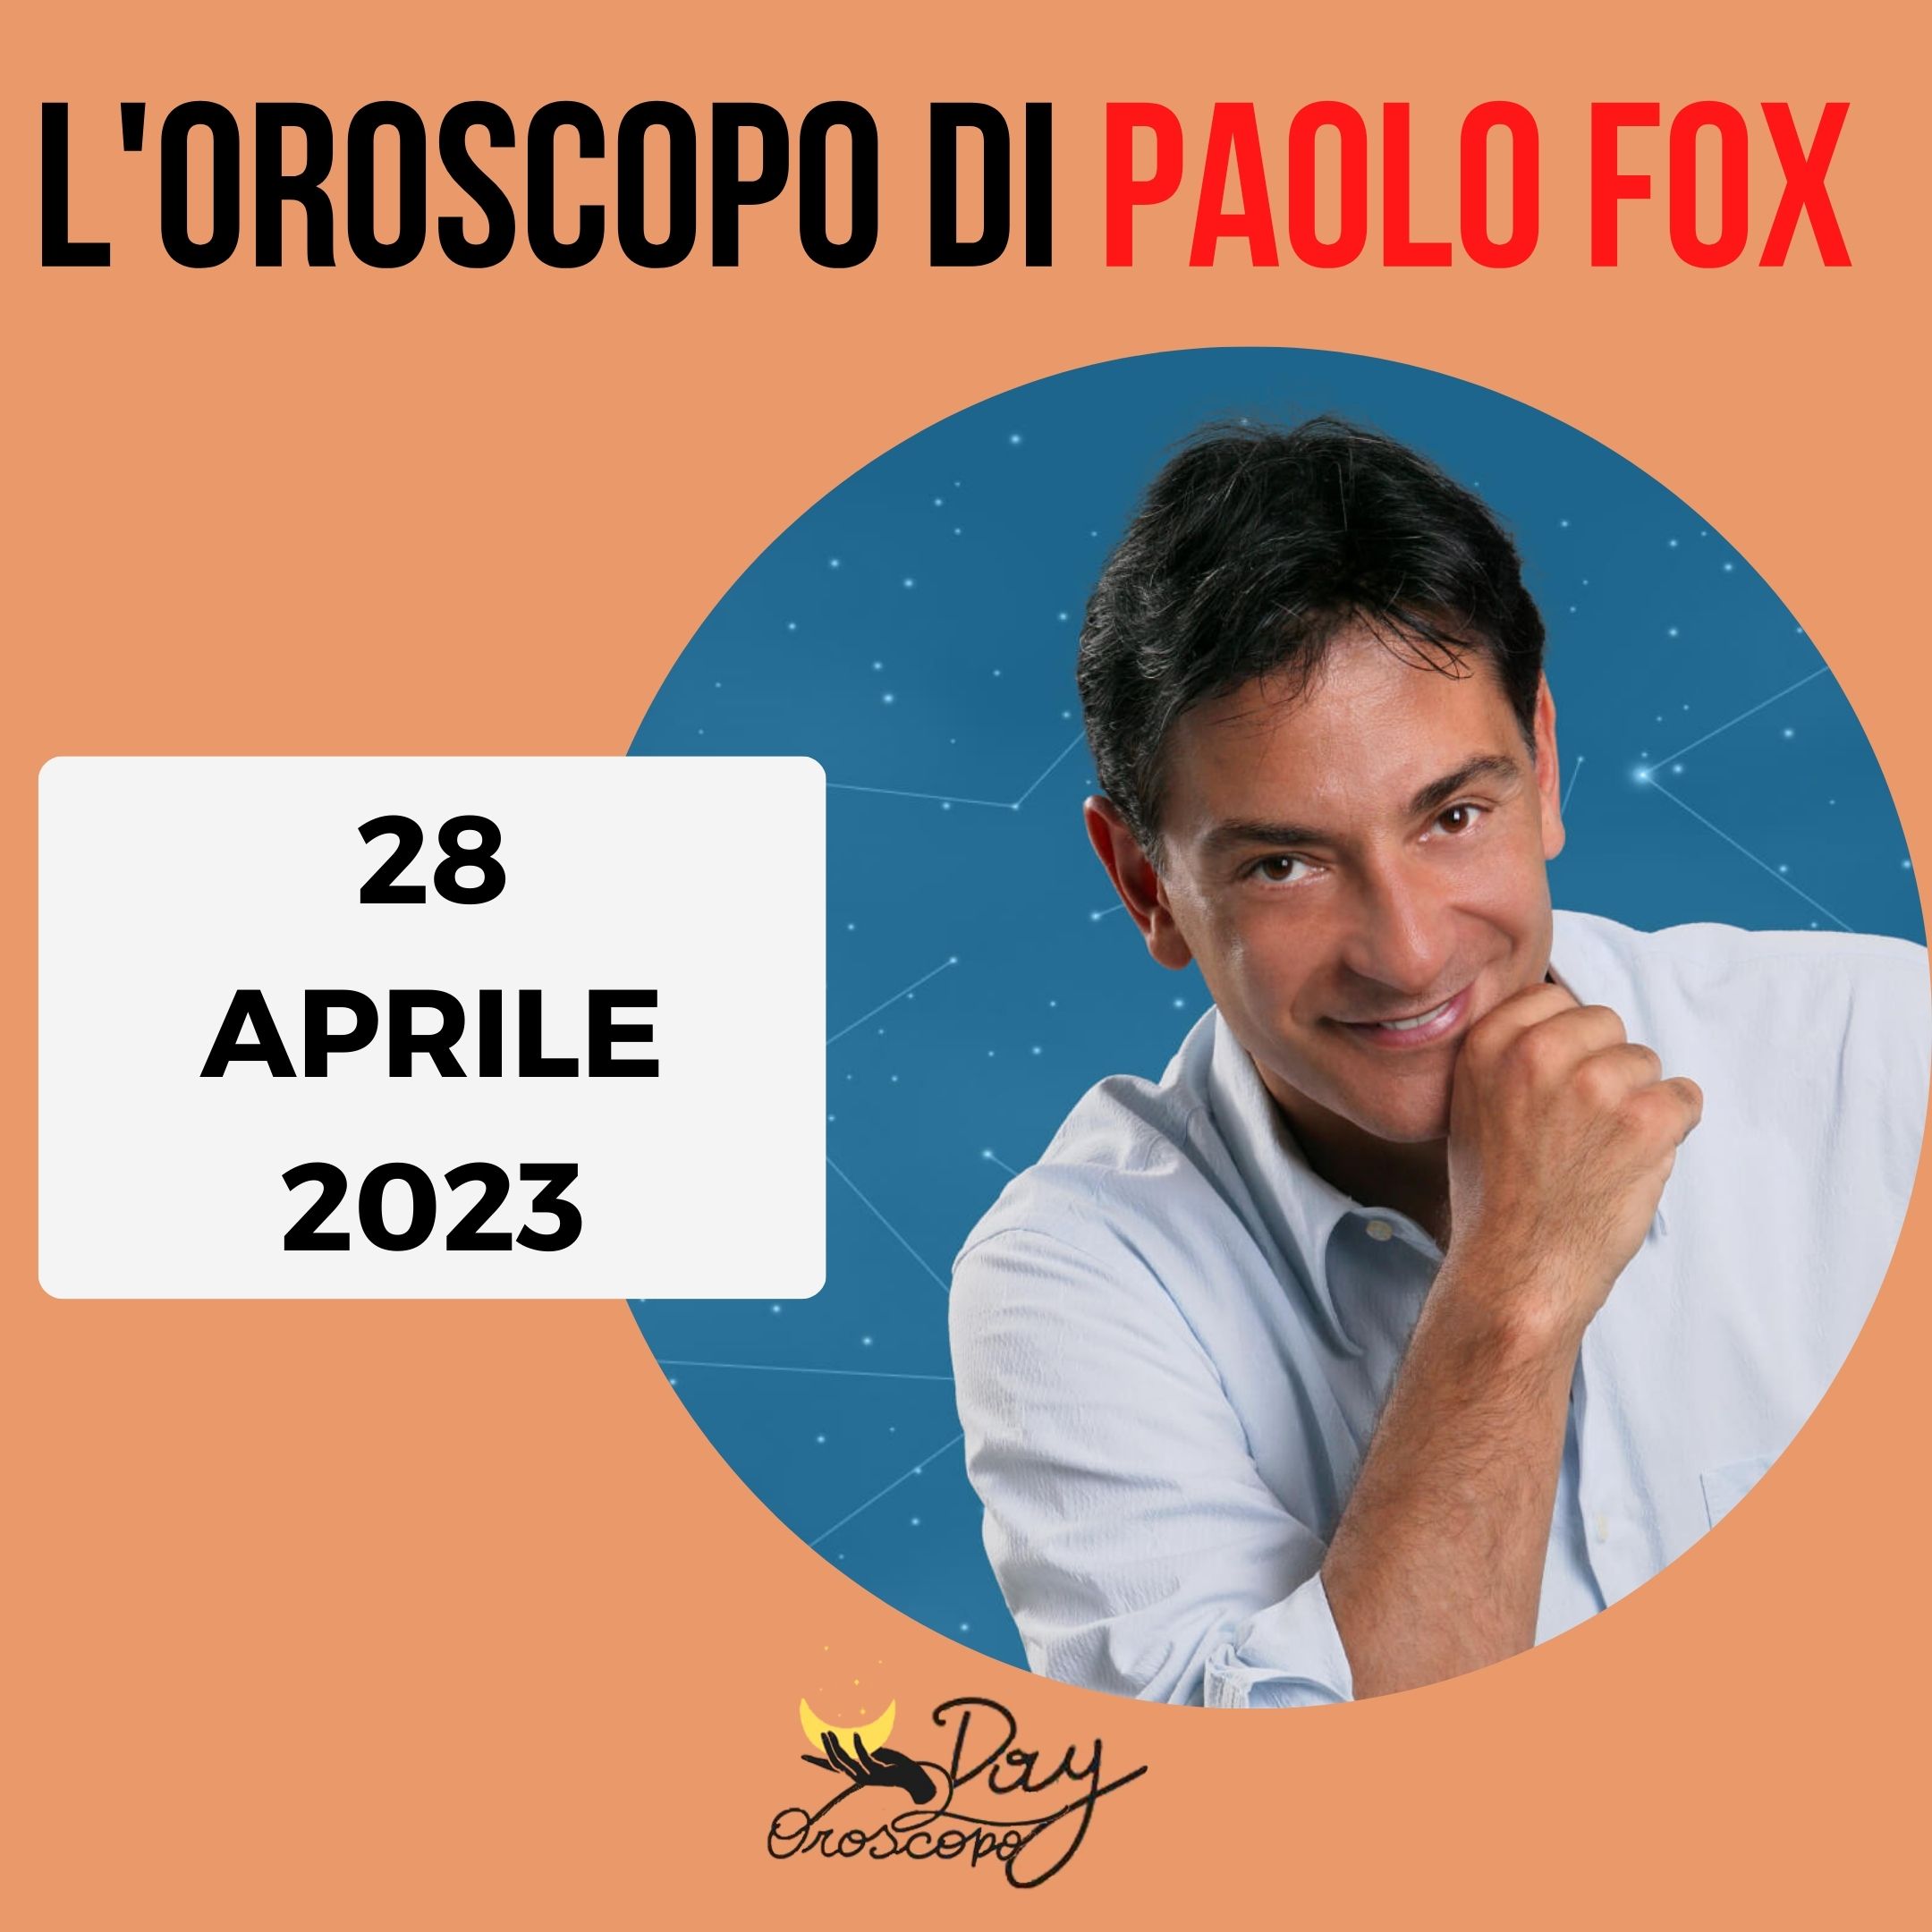 Oroscopo oggi domani Paolo Fox 28 aprile 2023